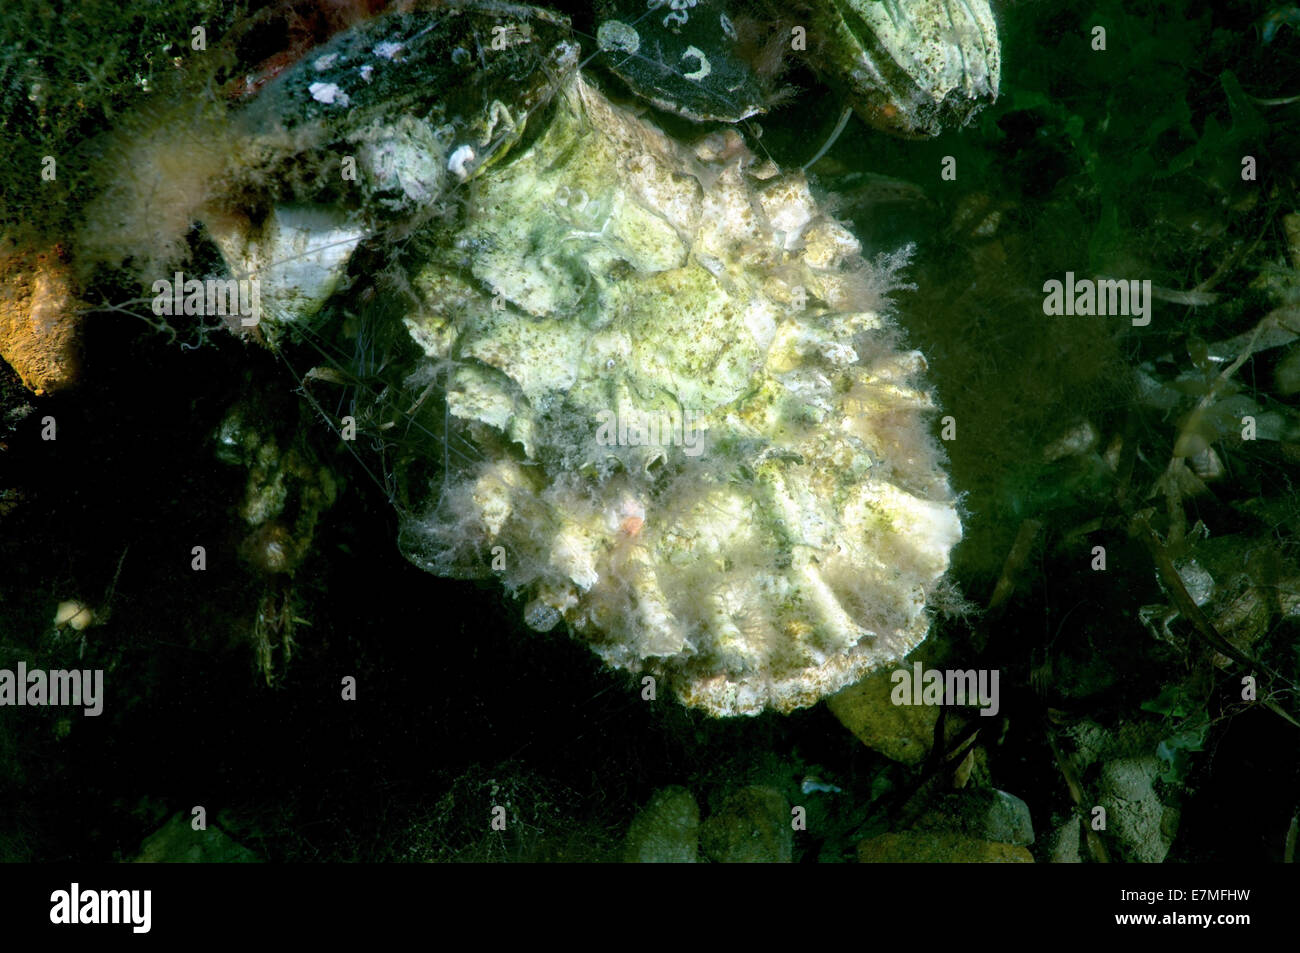 Pazifische Auster, japanische Auster oder Miyagi Auster (Crassostrea Gigas) des japanischen Meeres, Fernost, Primorsky Krai, Russische Föderation Stockfoto